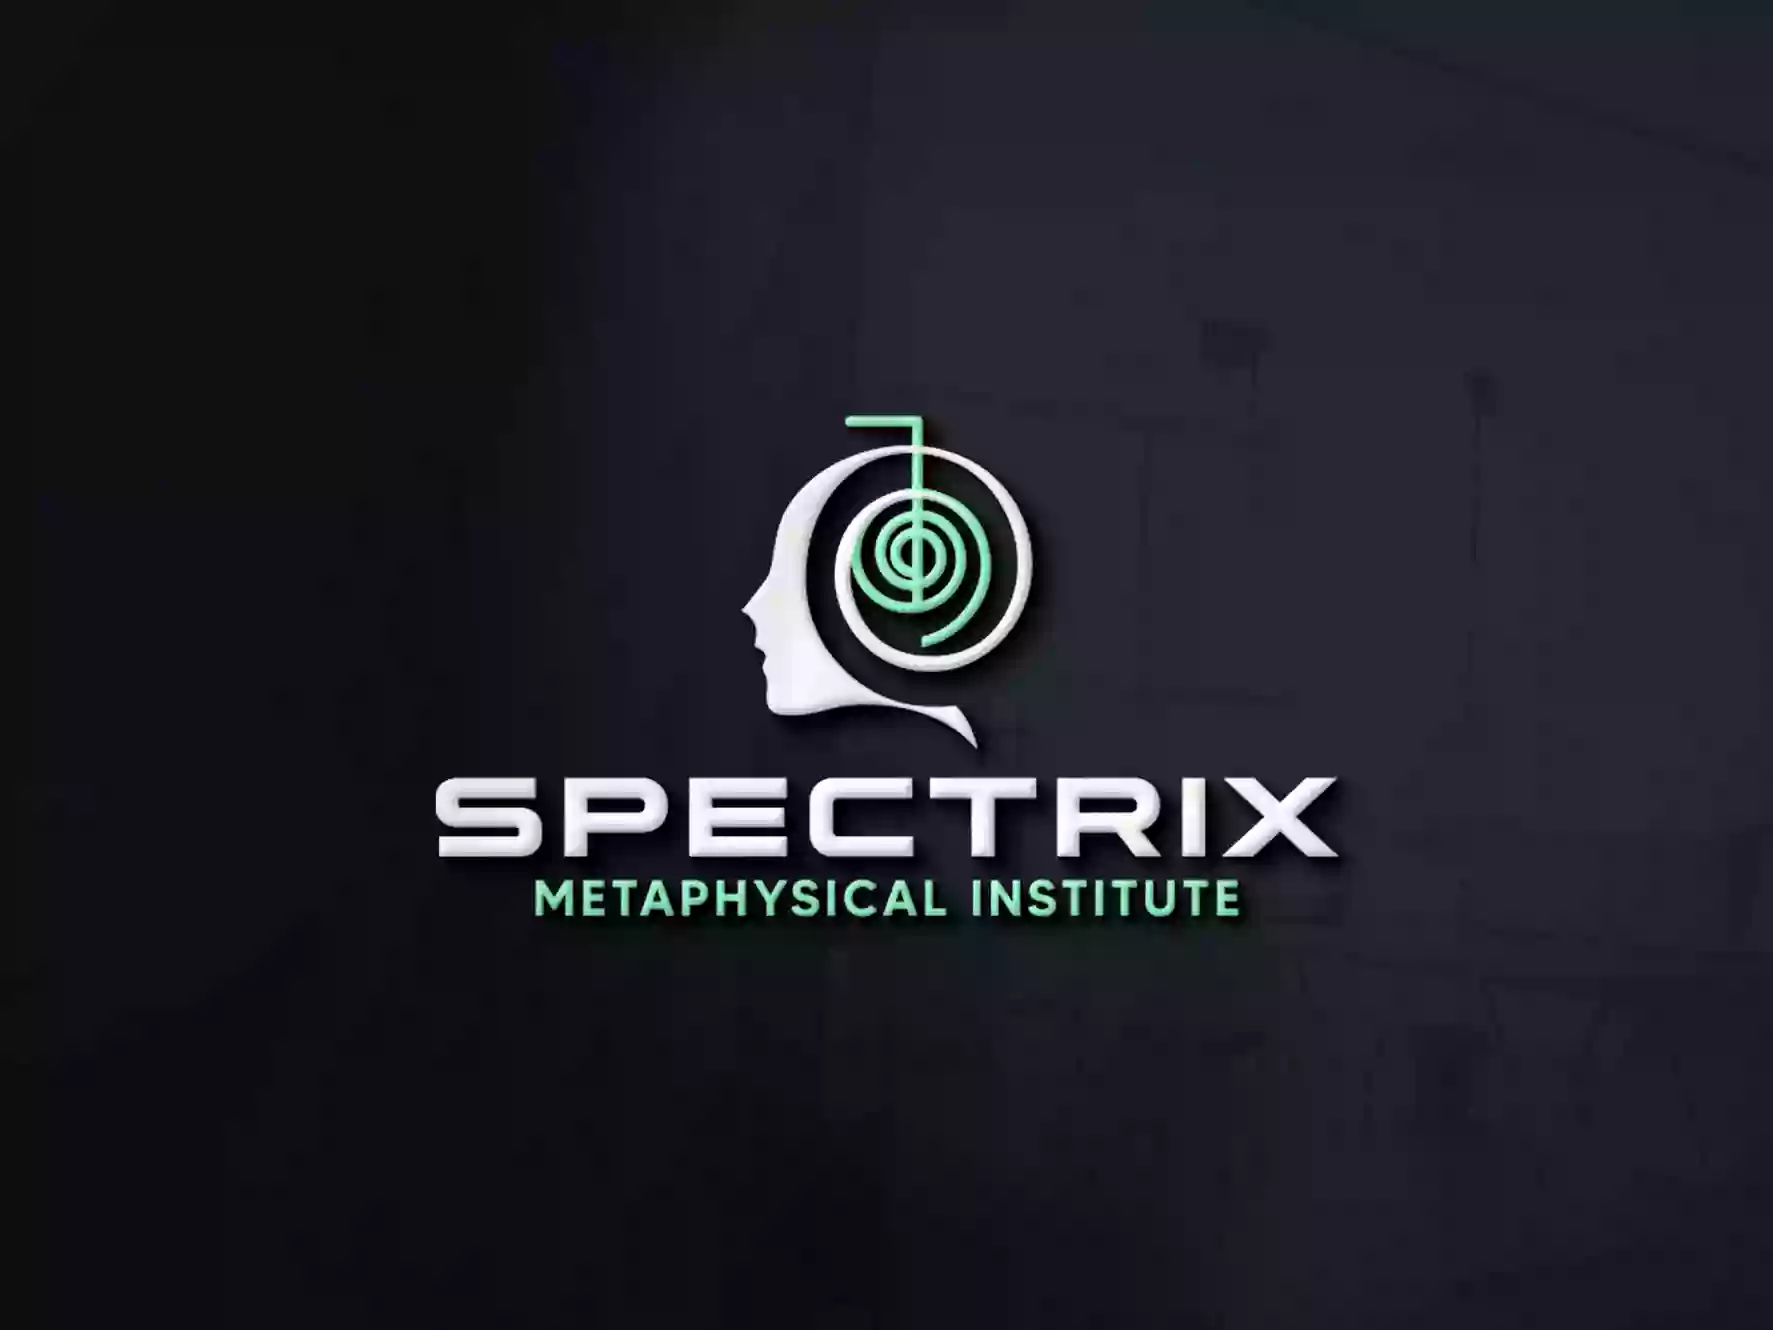 Spectrix Metaphysical Institute